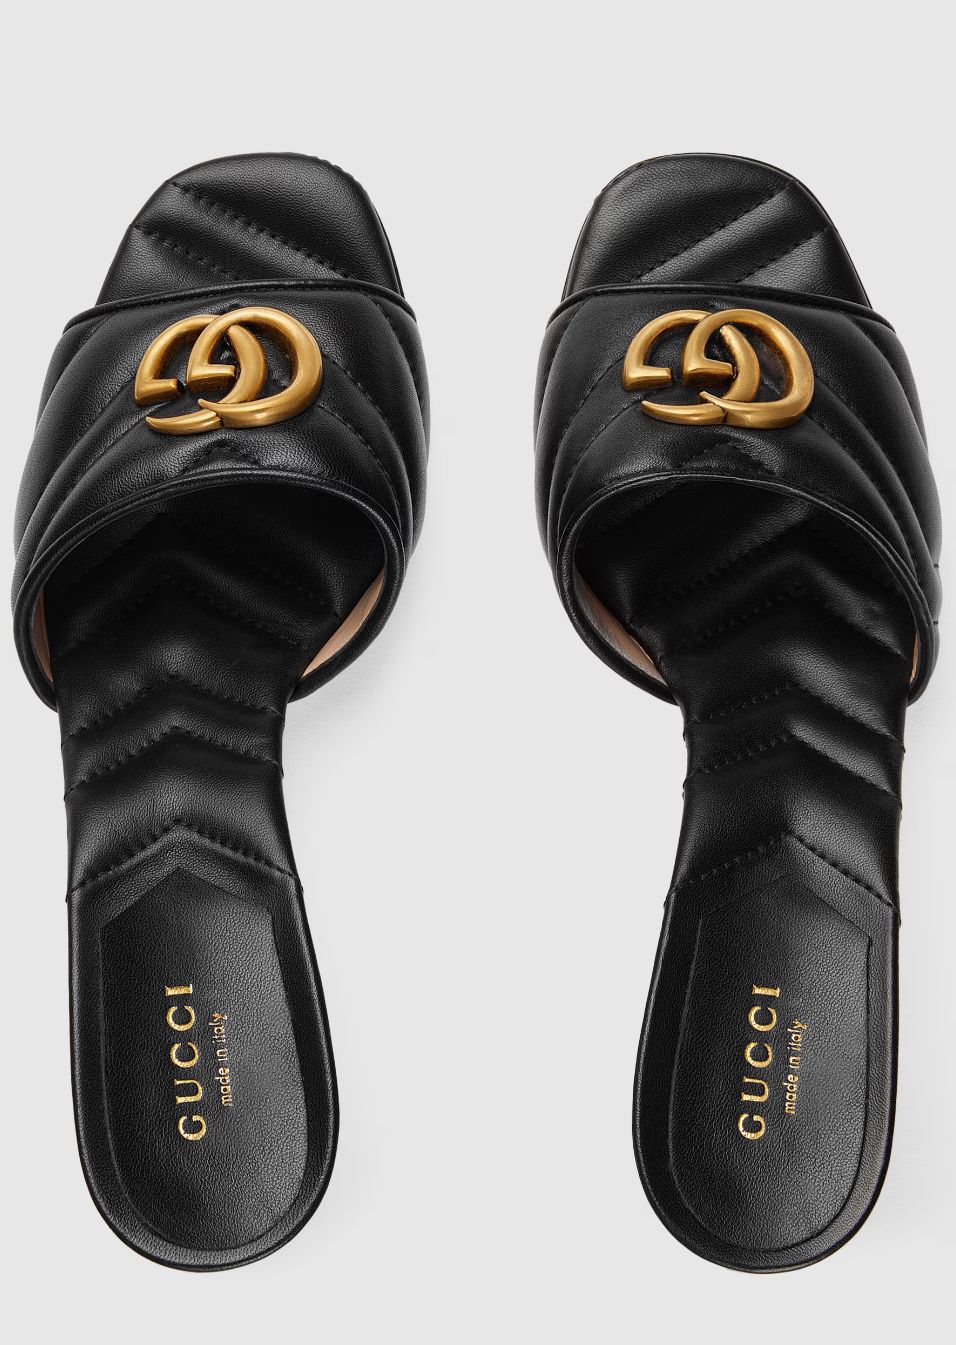 Gucci Slides - Brand New 